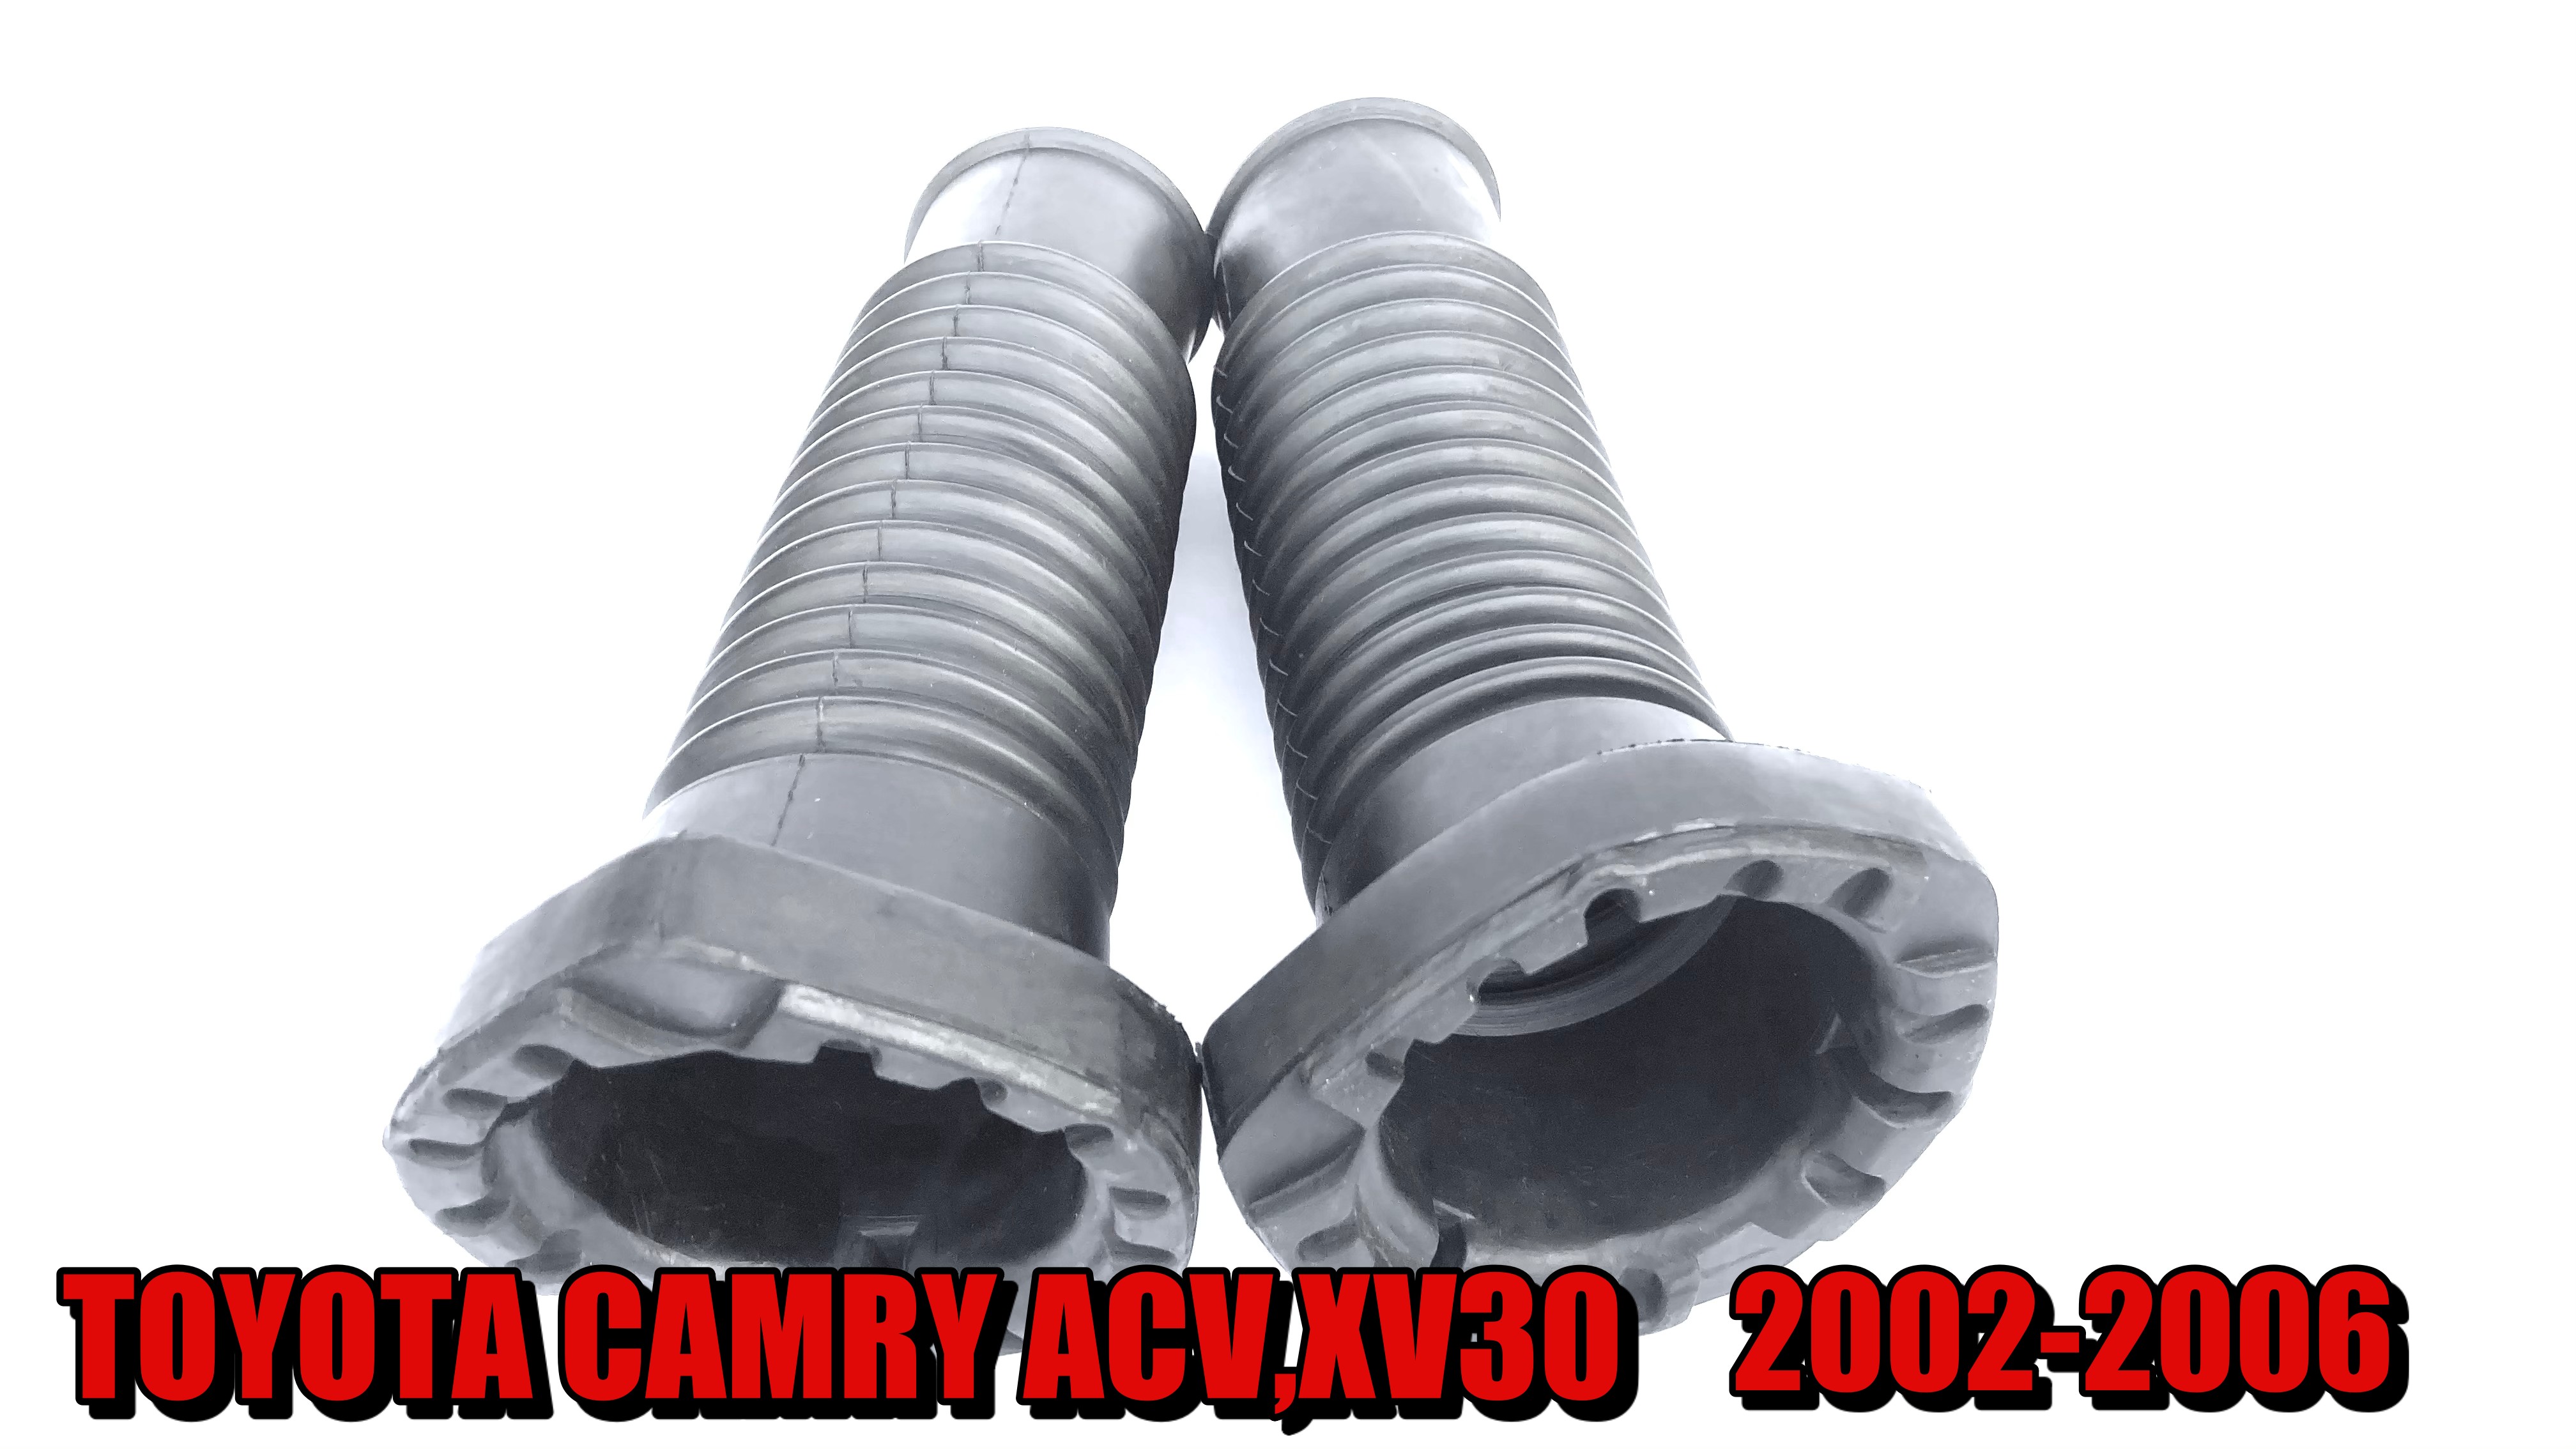 ยางกันฝุ่นโช๊คอัพหลัง TOYOTA CAMRY ACV,XV30 2002-2006 ราคาคู่ละ 219฿